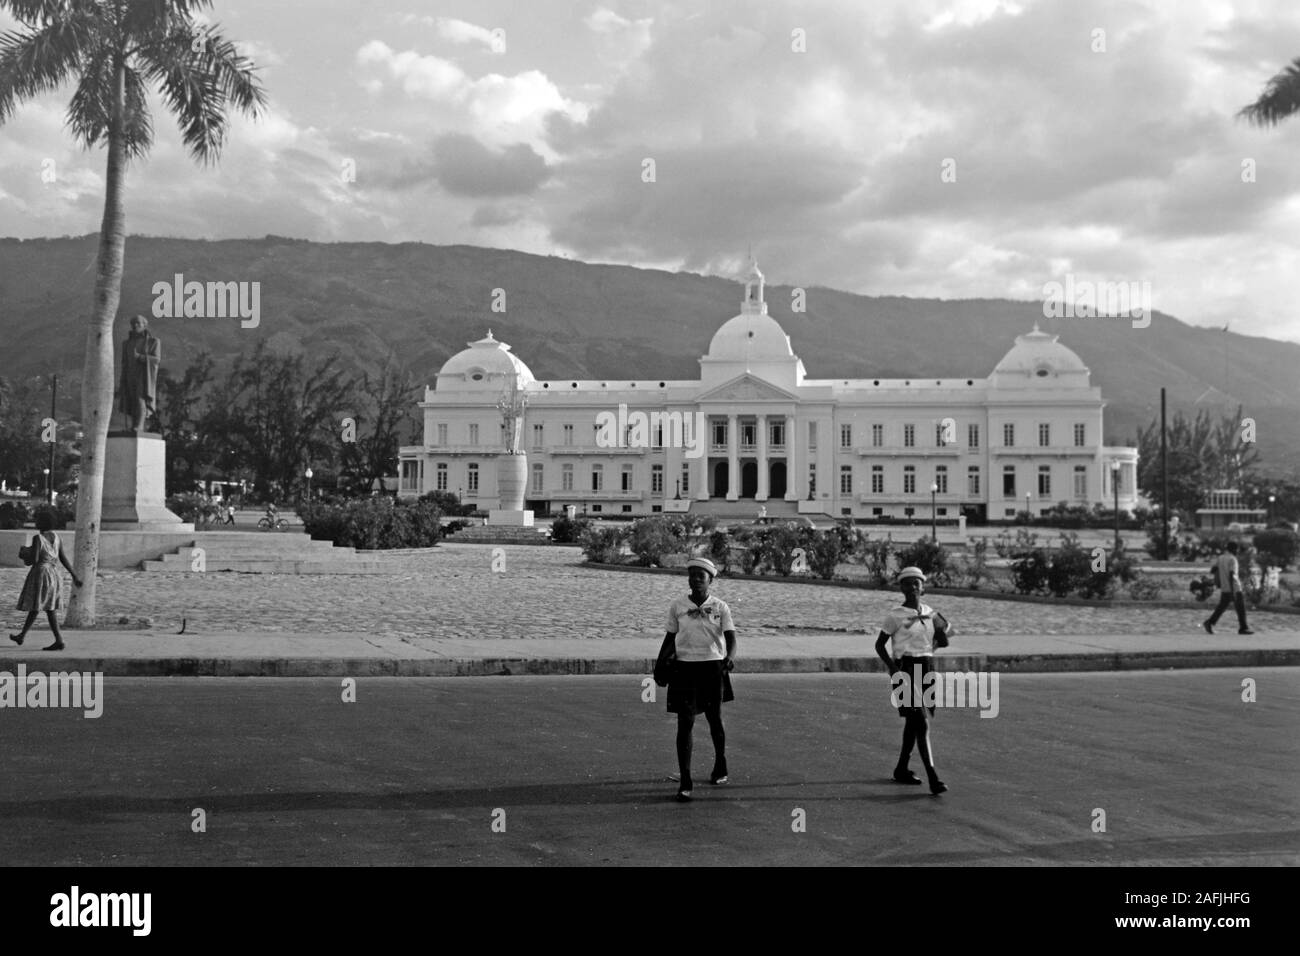 Dritter Präsidentenpalast von Haiti, 1967. Third presidential palace of Haiti, 1967. Stock Photo